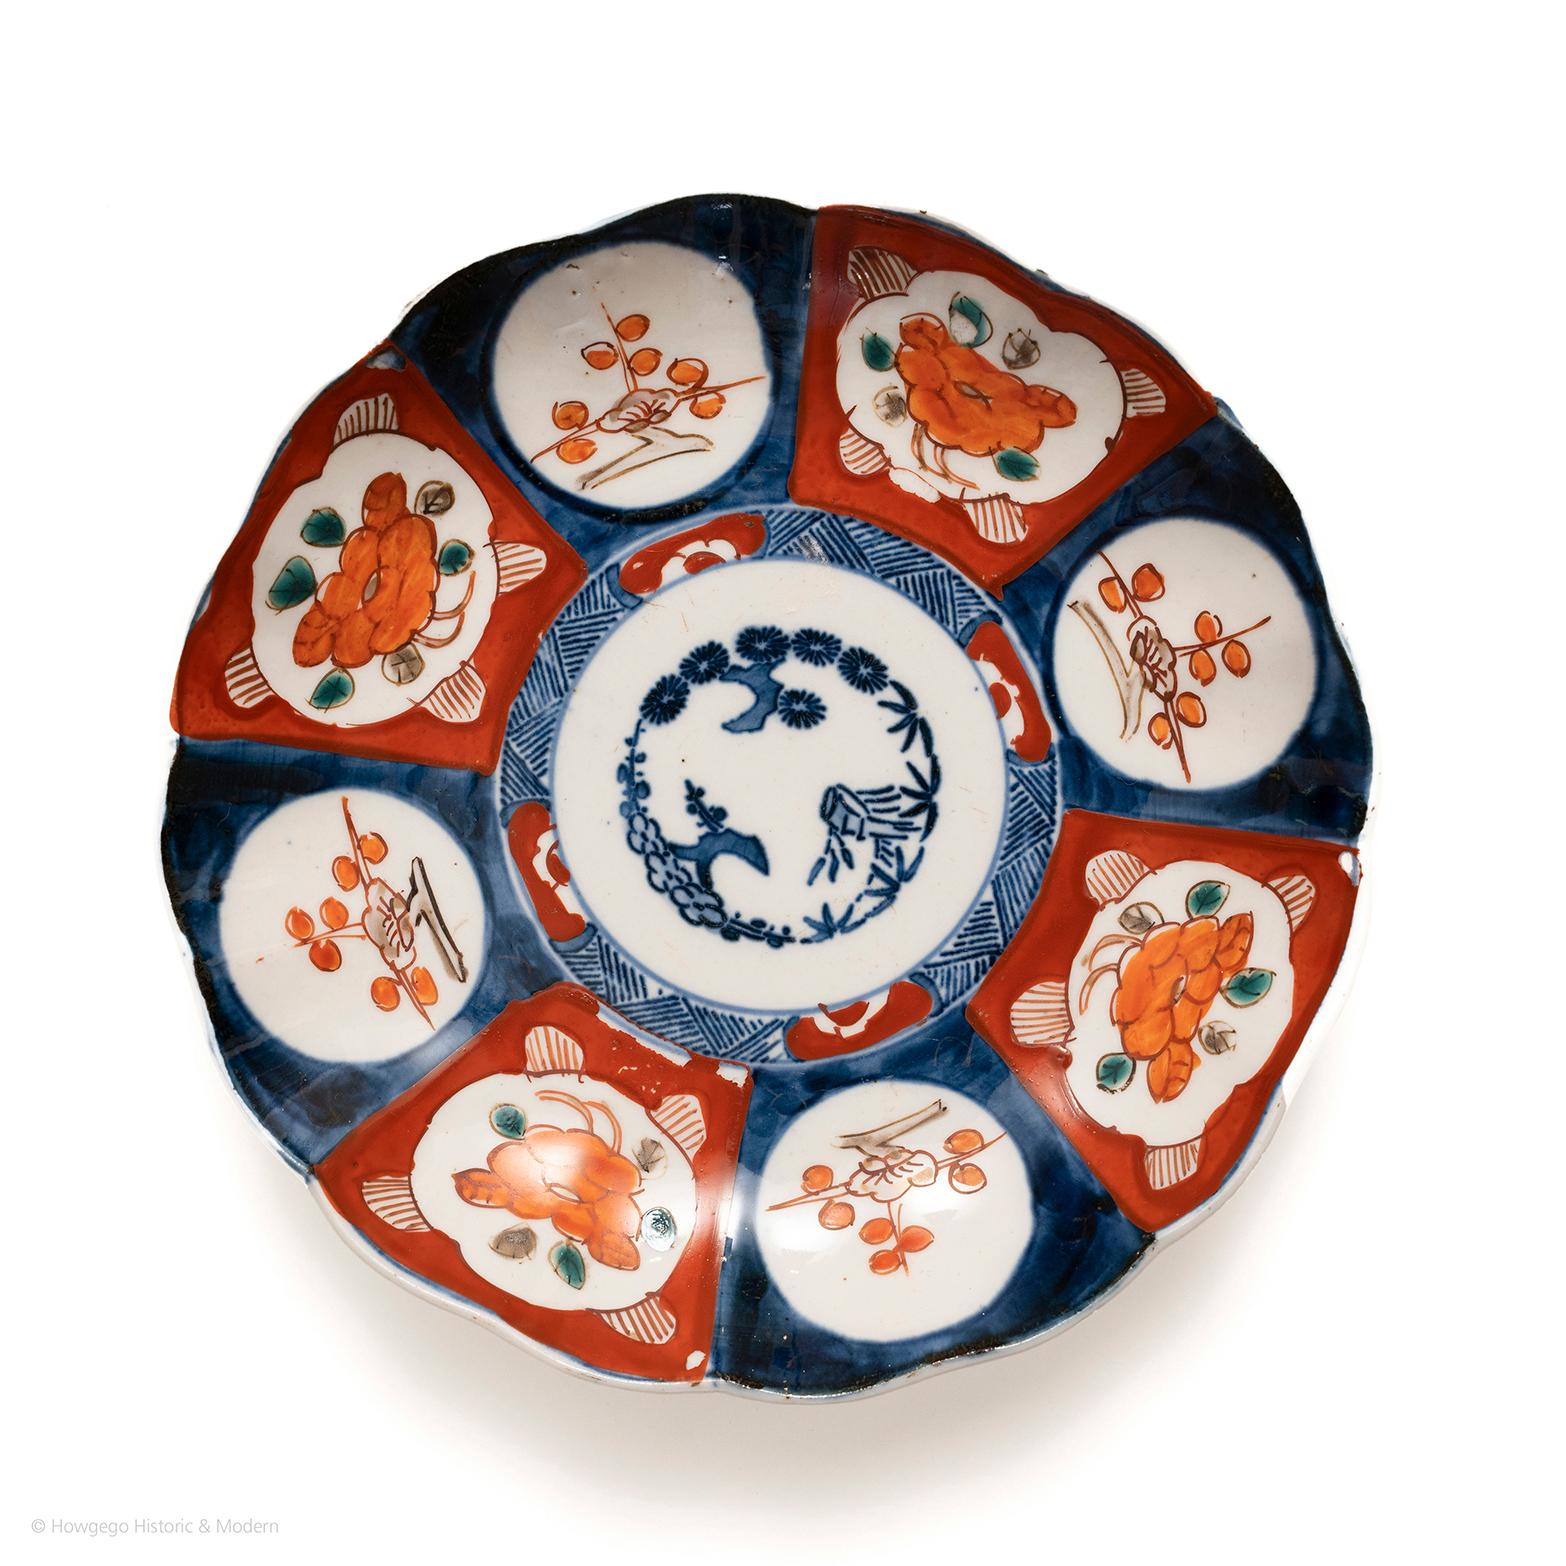 Auffälliger, gelappter Imari-Teller mit einfachen, kühnen Ornamenten, die auf ein frühes Stück hindeuten. In der Mitte drei stilisierte Bonsai, die an die Qualität der Reflexion erinnern, umgeben von einem Spalier und einer Blumenrabatte. Der Rand